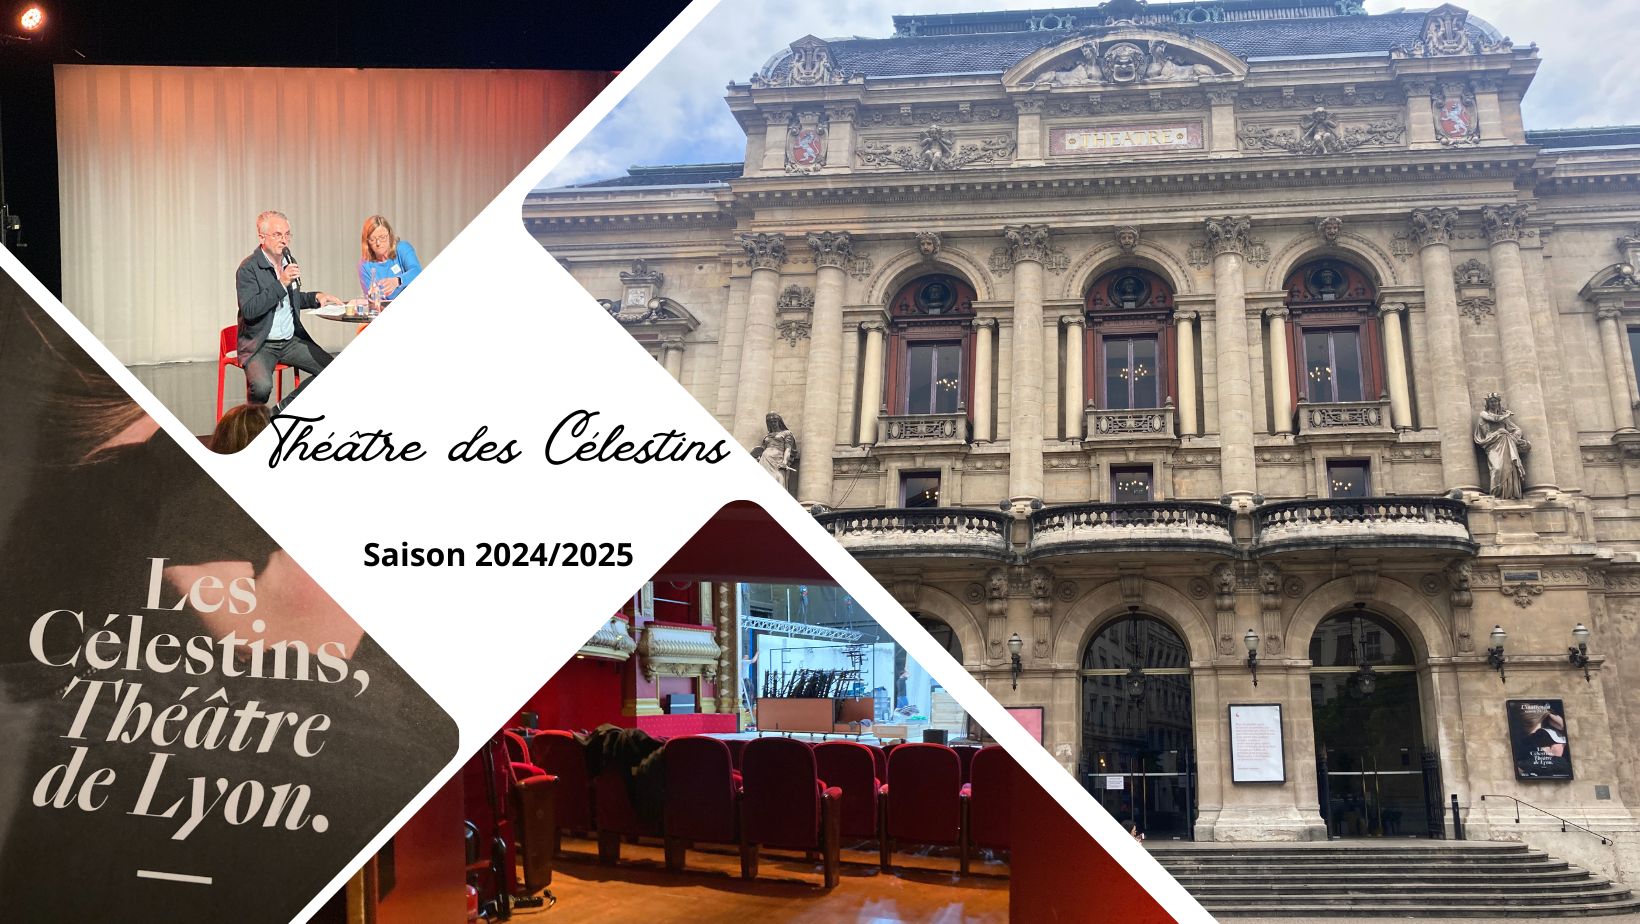 Les Célestins, Théâtre de Lyon : nouvelle saison 2024/2025